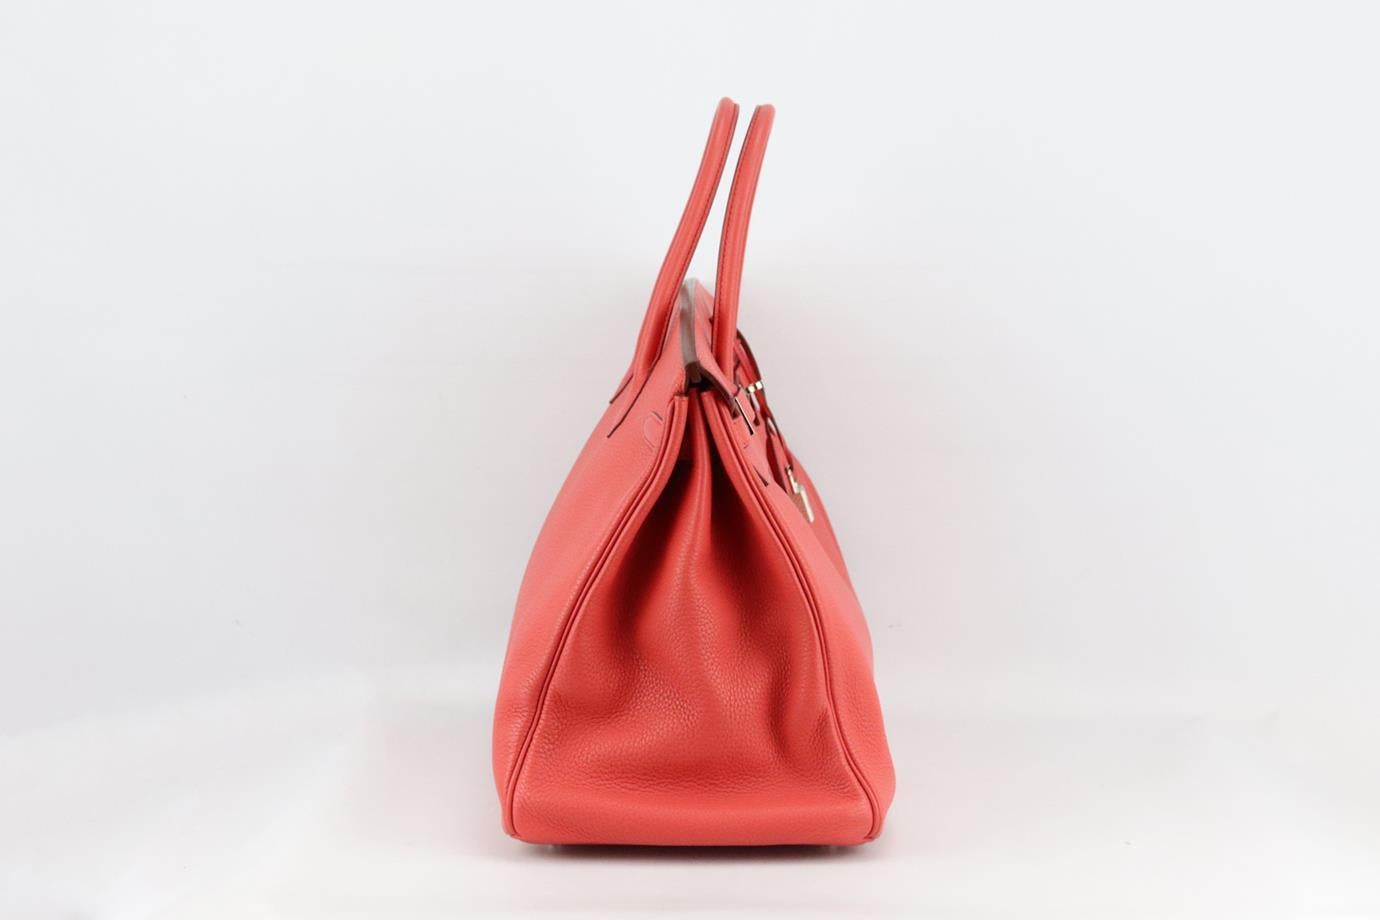 <ul>
<li>Hermès 2010 Birkin 40cm sac en cuir Togo.</li>
<li>Fabriqué en France, ce magnifique sac à main Hermès 'Birkin' 2010 a été réalisé à partir d'un extérieur 'Togo' en 'Bougainvillier' de couleur rose et d'un intérieur en cuir assorti. Cette